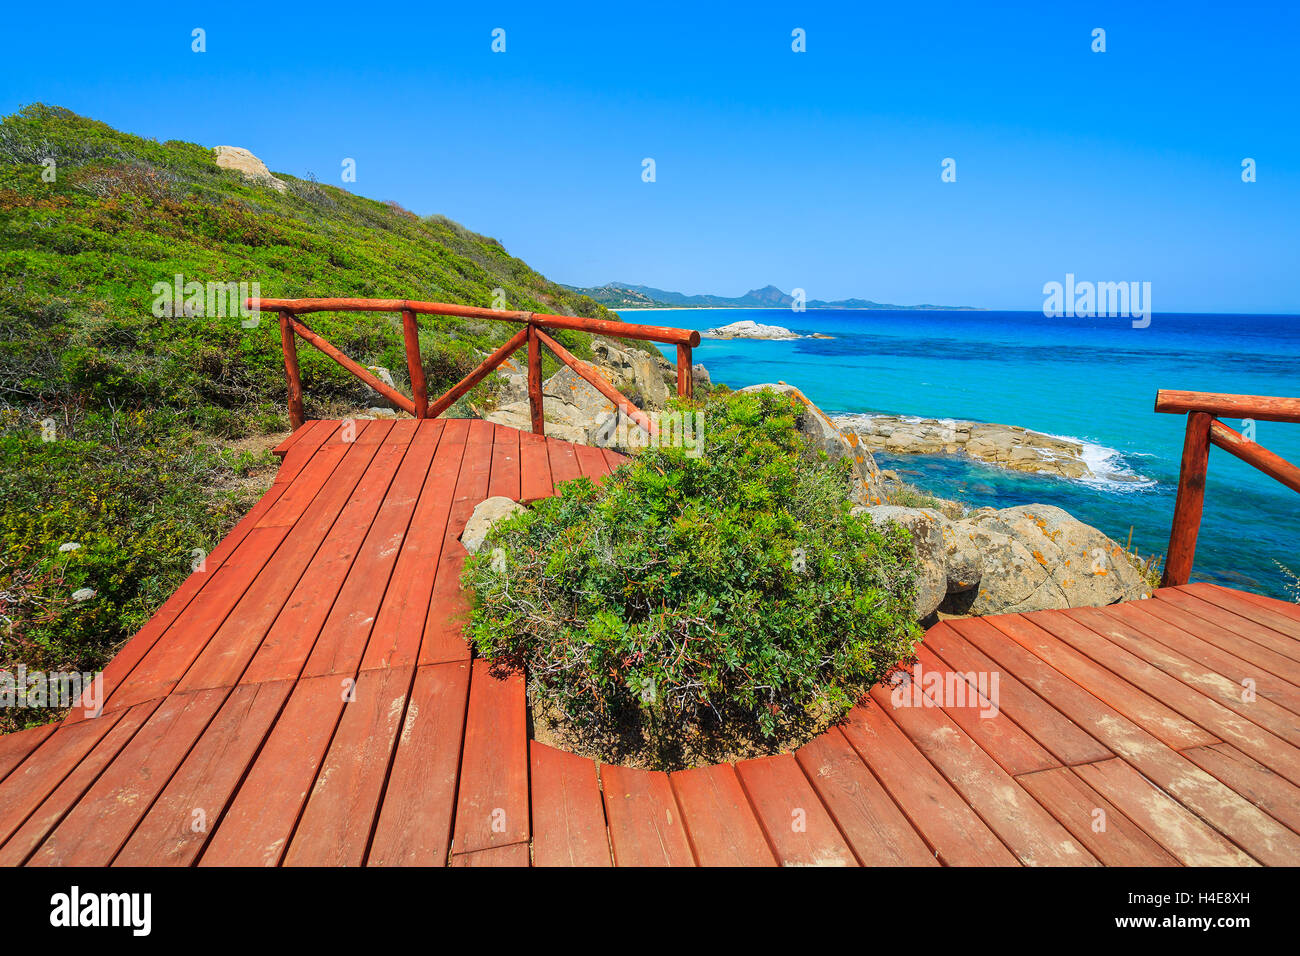 Red legno piattaforma viewpoint a Cala Sinzias Baia Turchese e vista sul mare, l'isola di Sardegna, Italia Foto Stock